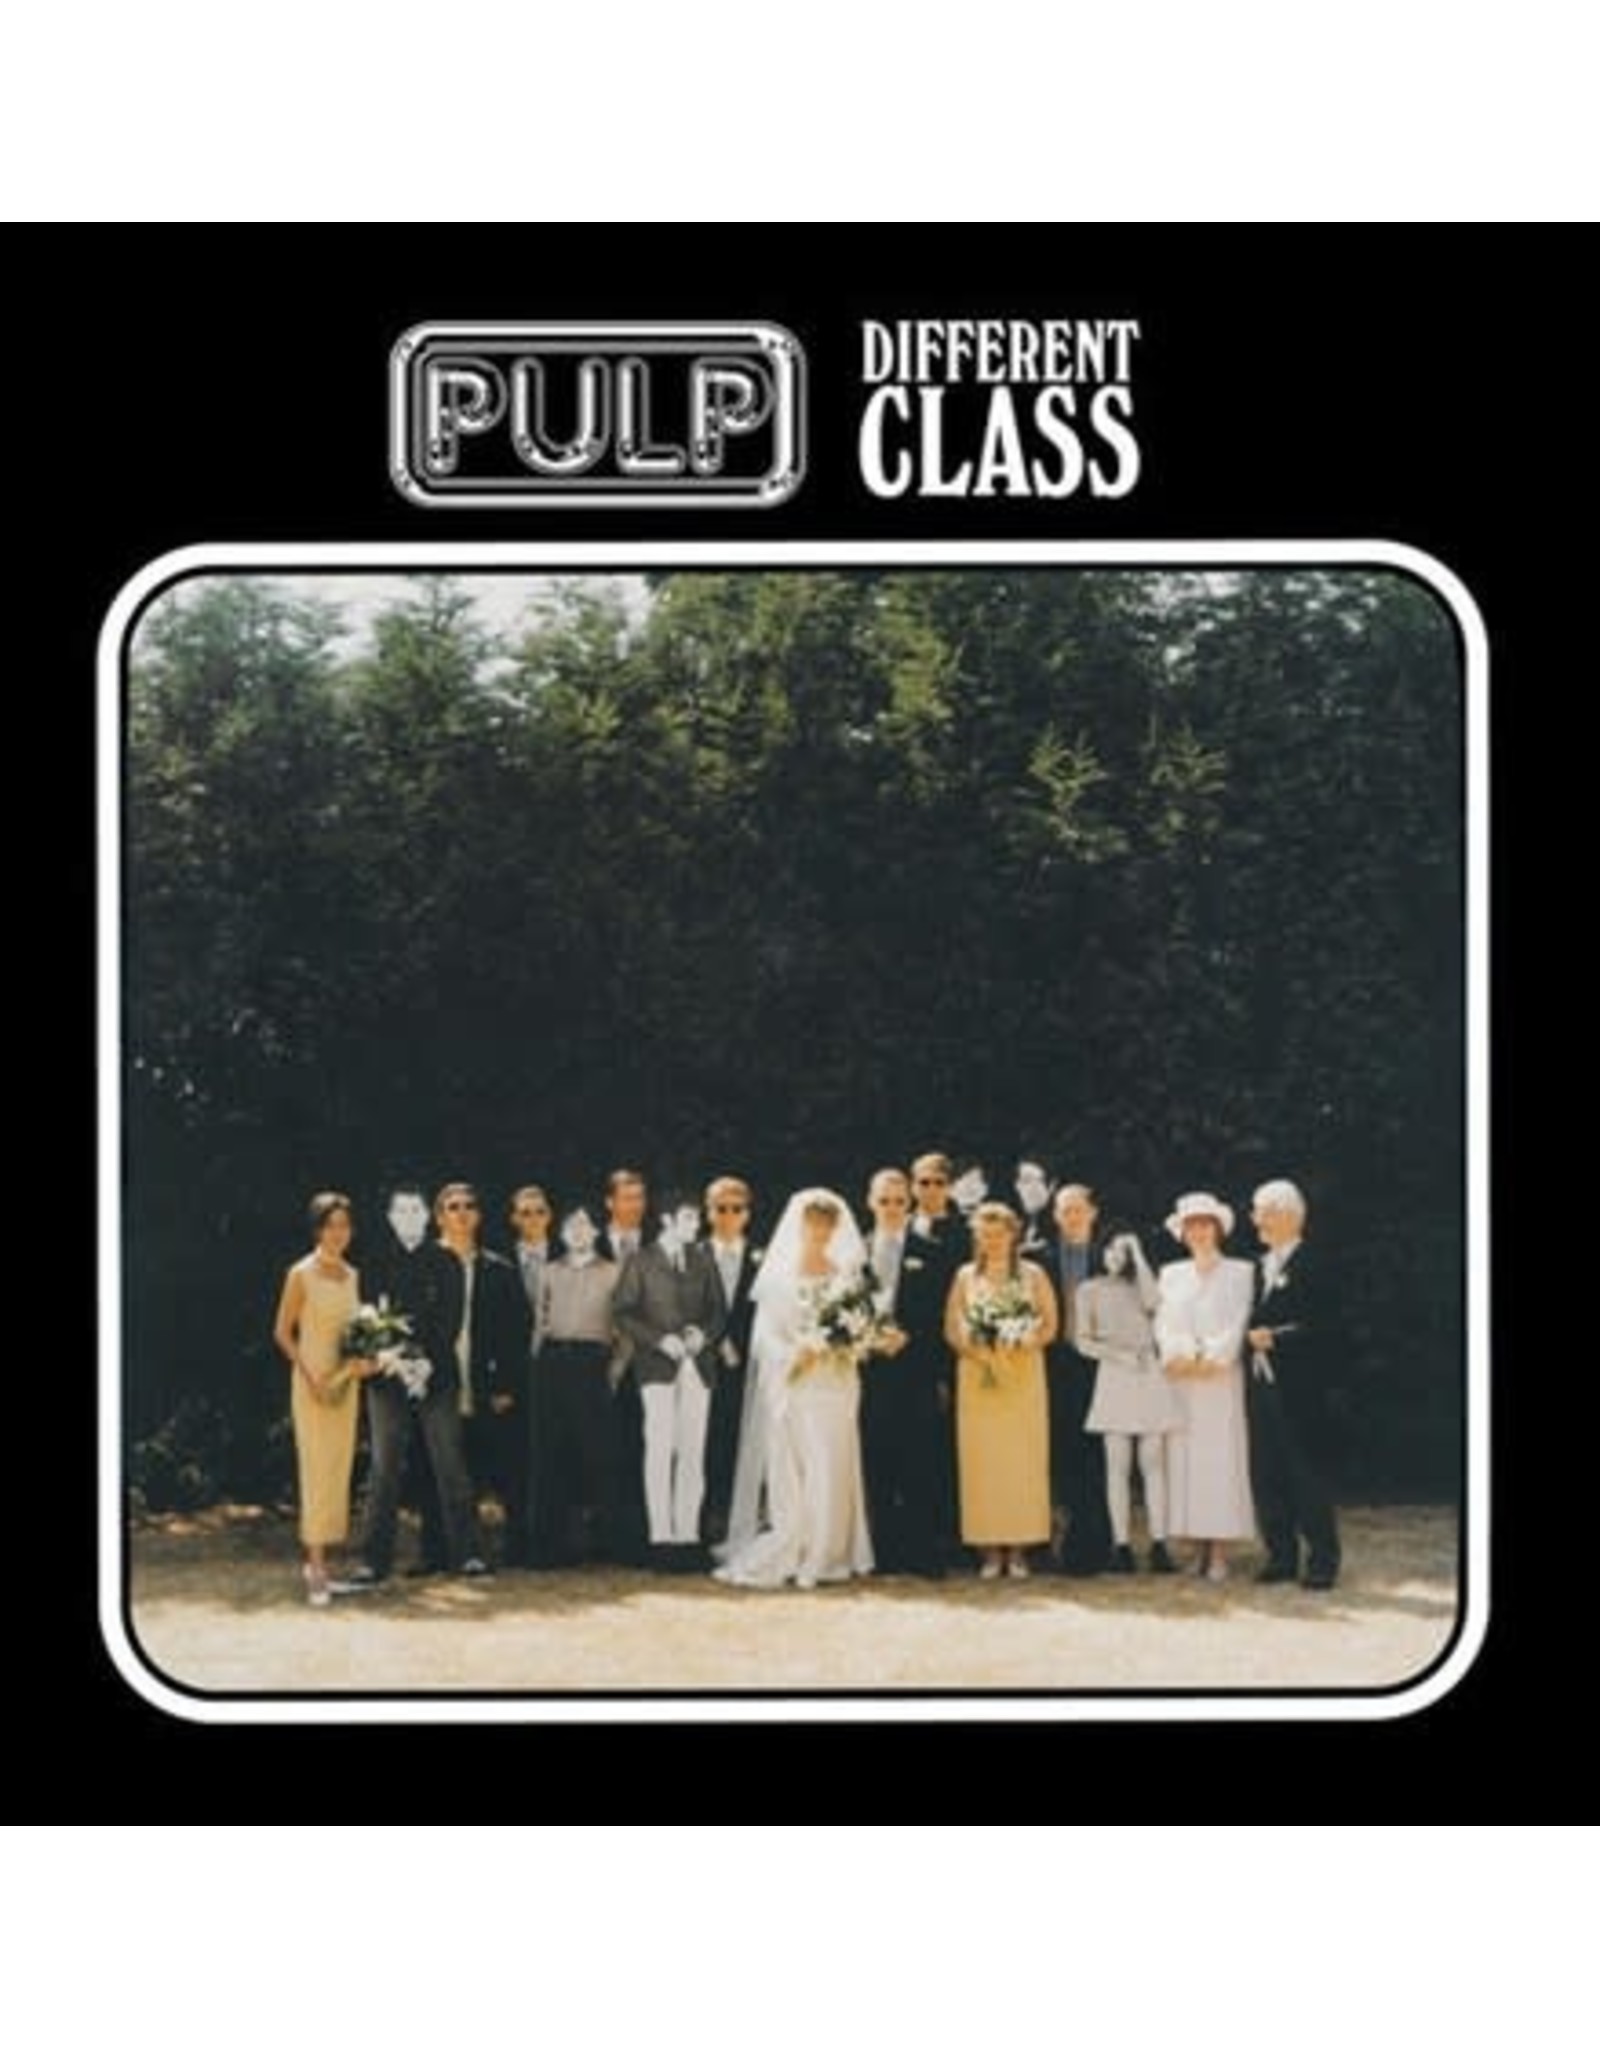 Island Pulp: Different Class LP